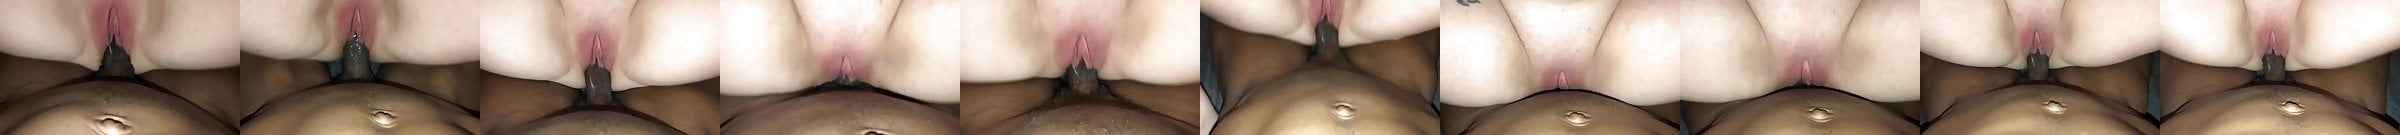 Black Stud Penetrating A Horny Doll Closeup Free Porn 55